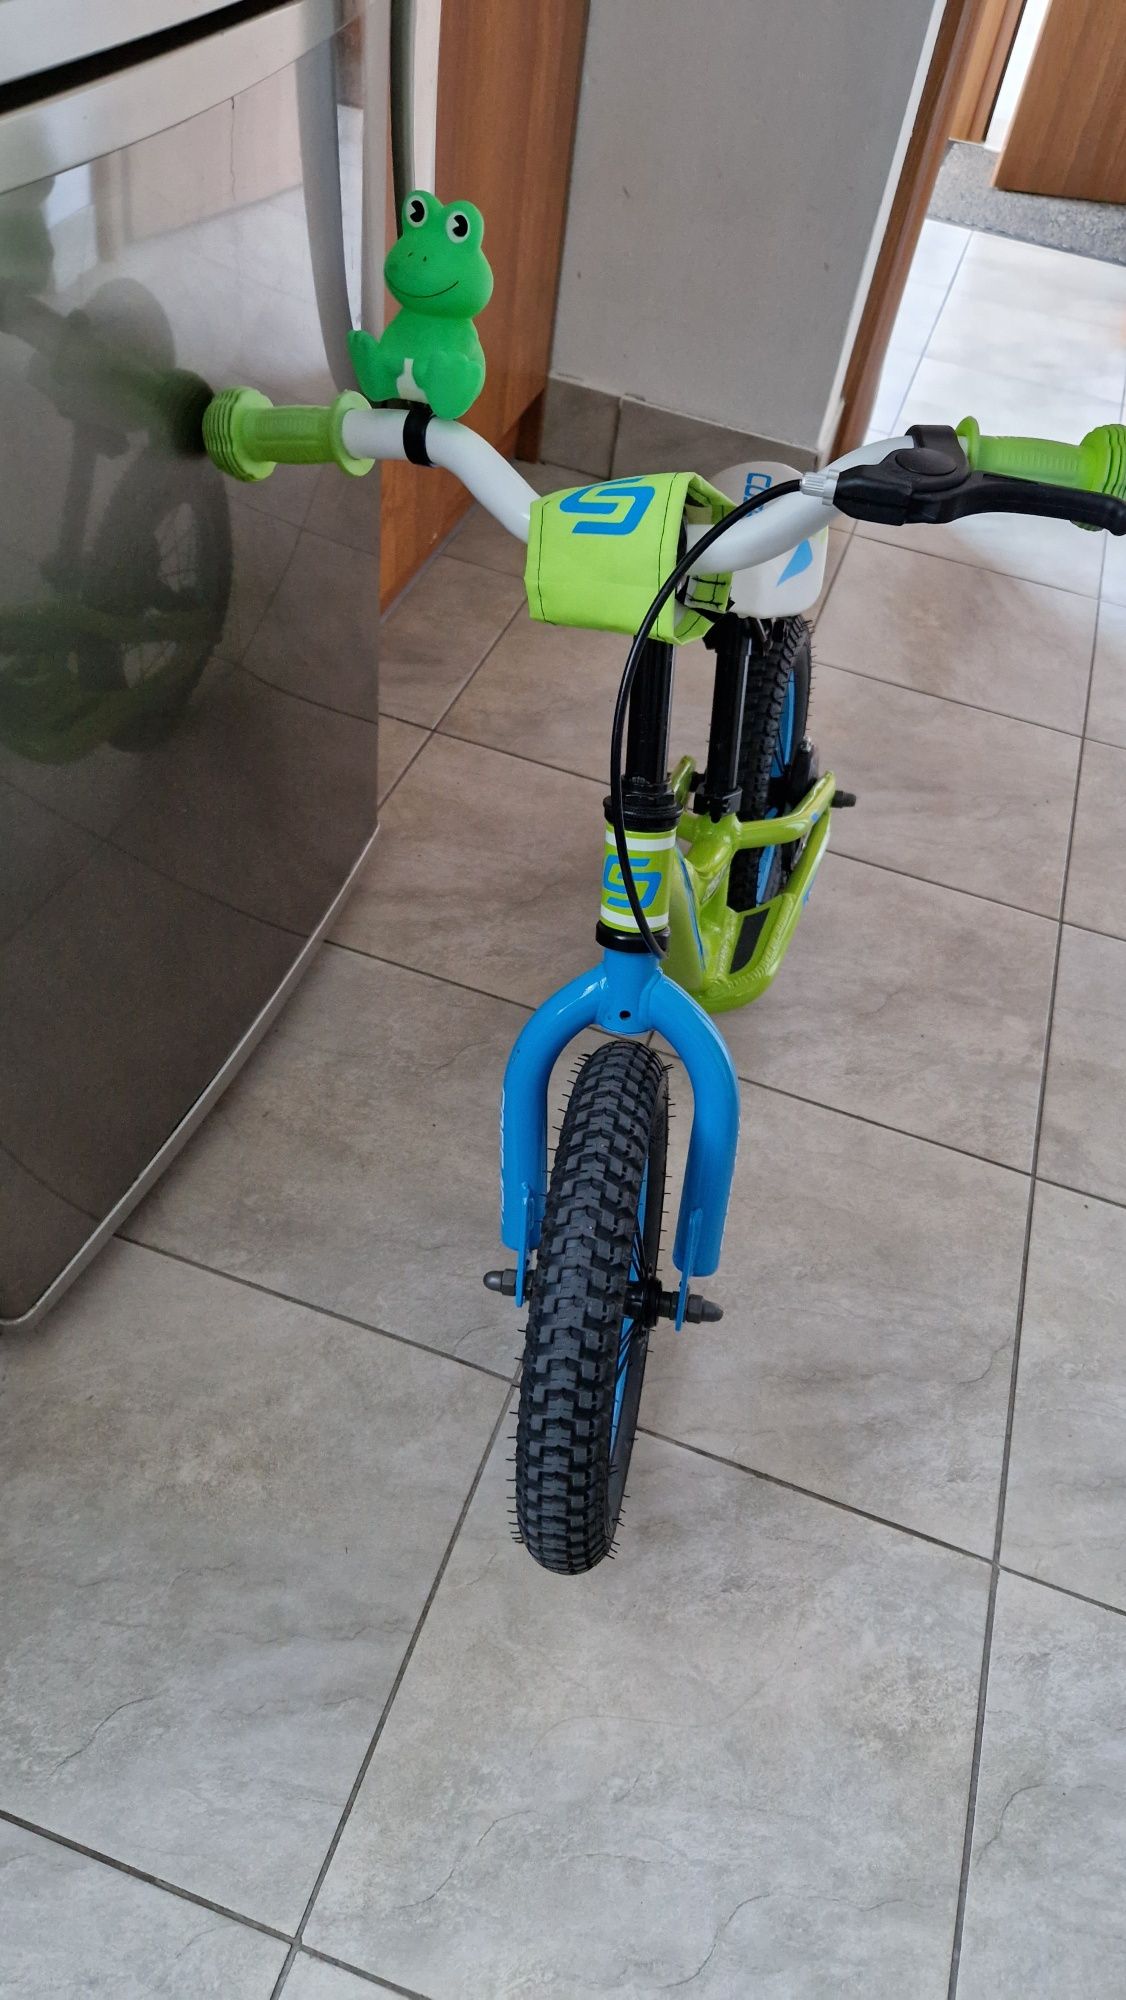 Jak nowy odpychacz dla dziecka 2-4 lata rower rowerek biegowy cossack